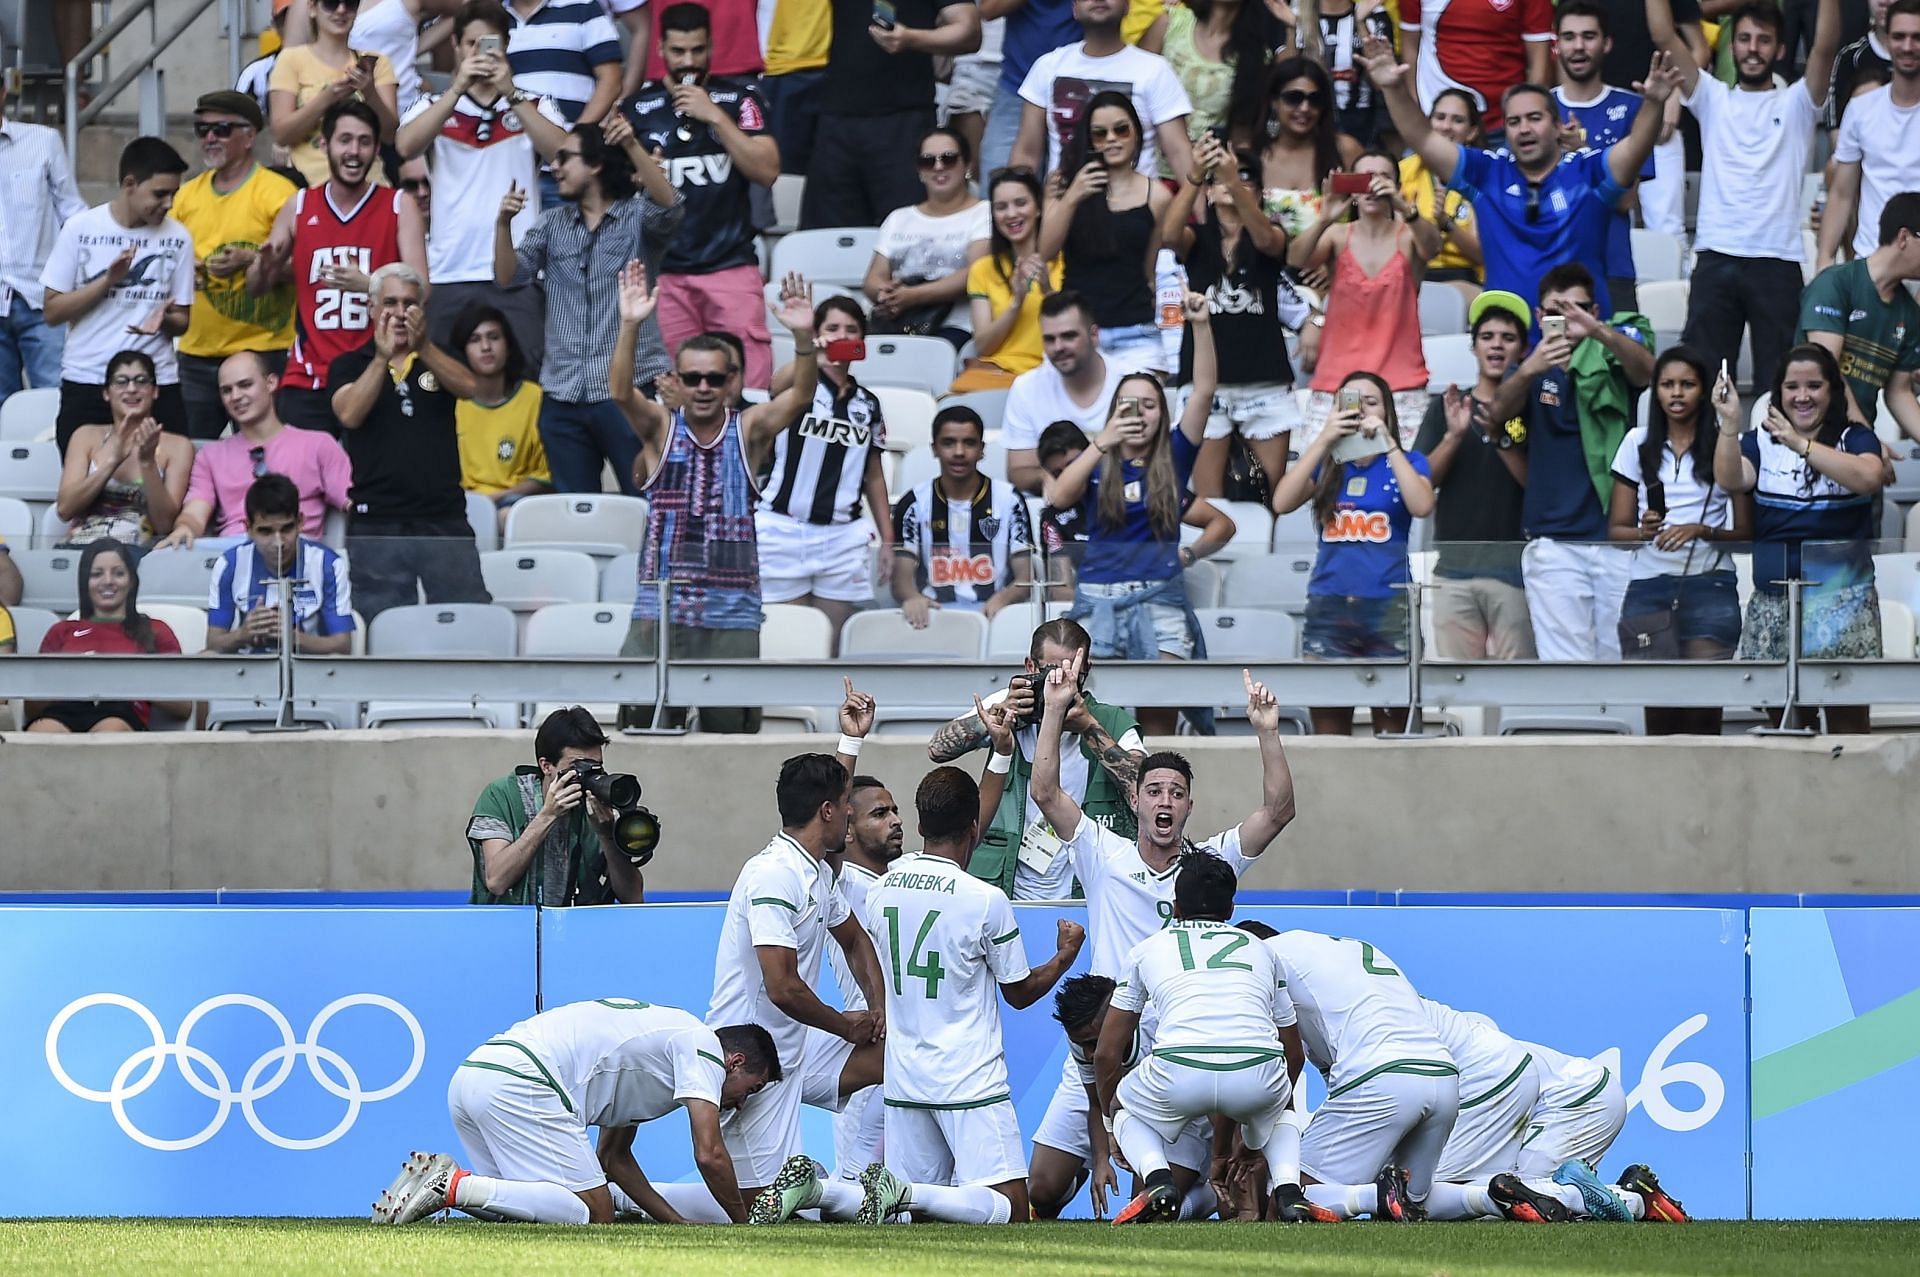 Argelia v Portugal: fútbol masculino - Juegos Olímpicos: día 5